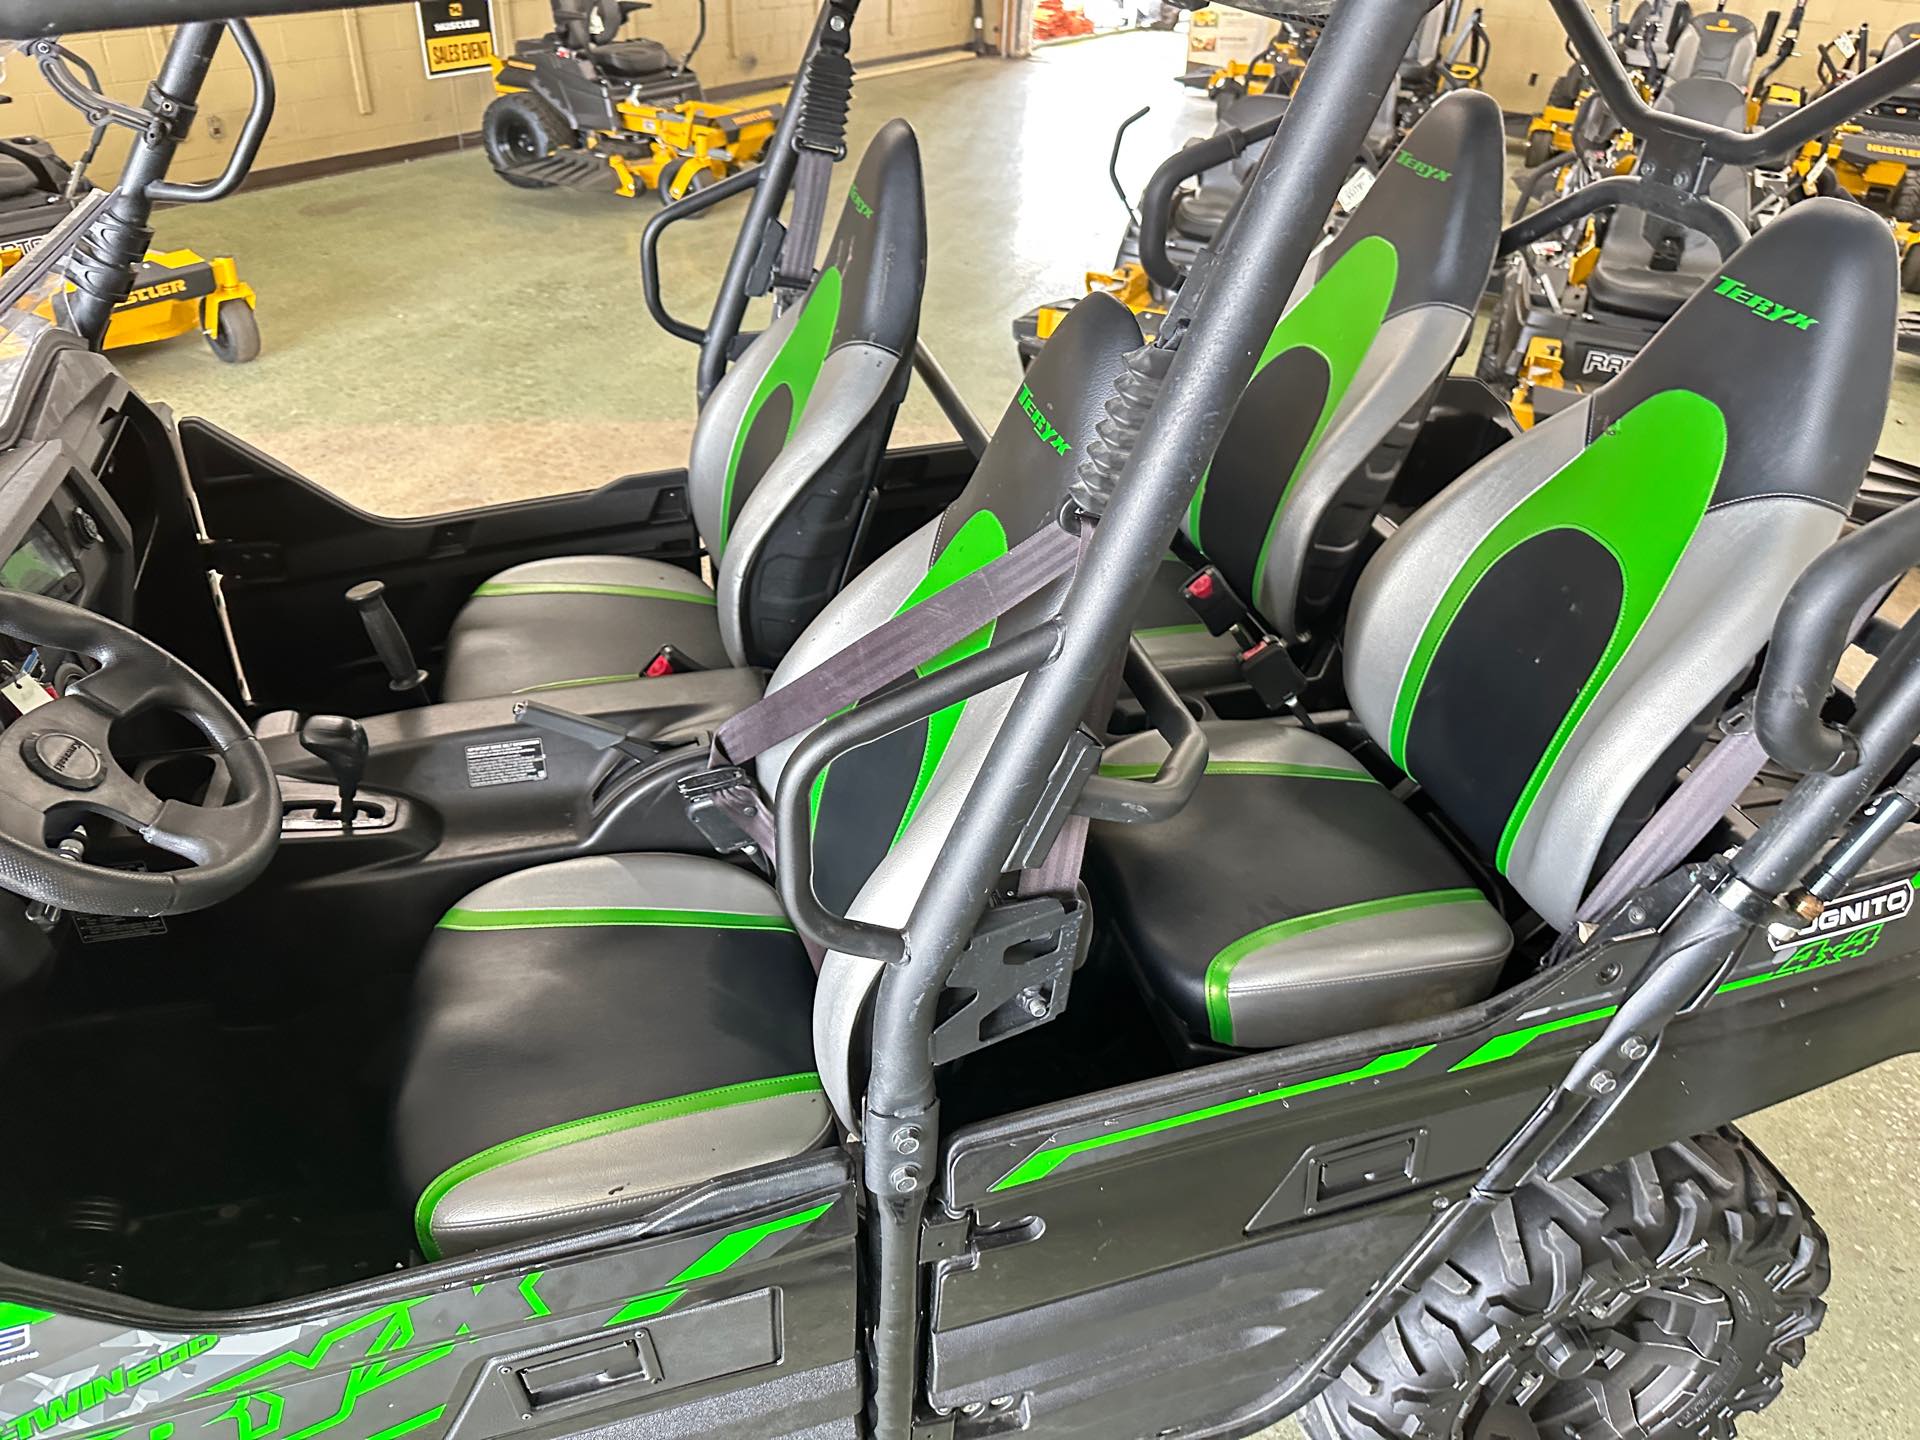 2020 Kawasaki Teryx4 Camo at ATVs and More